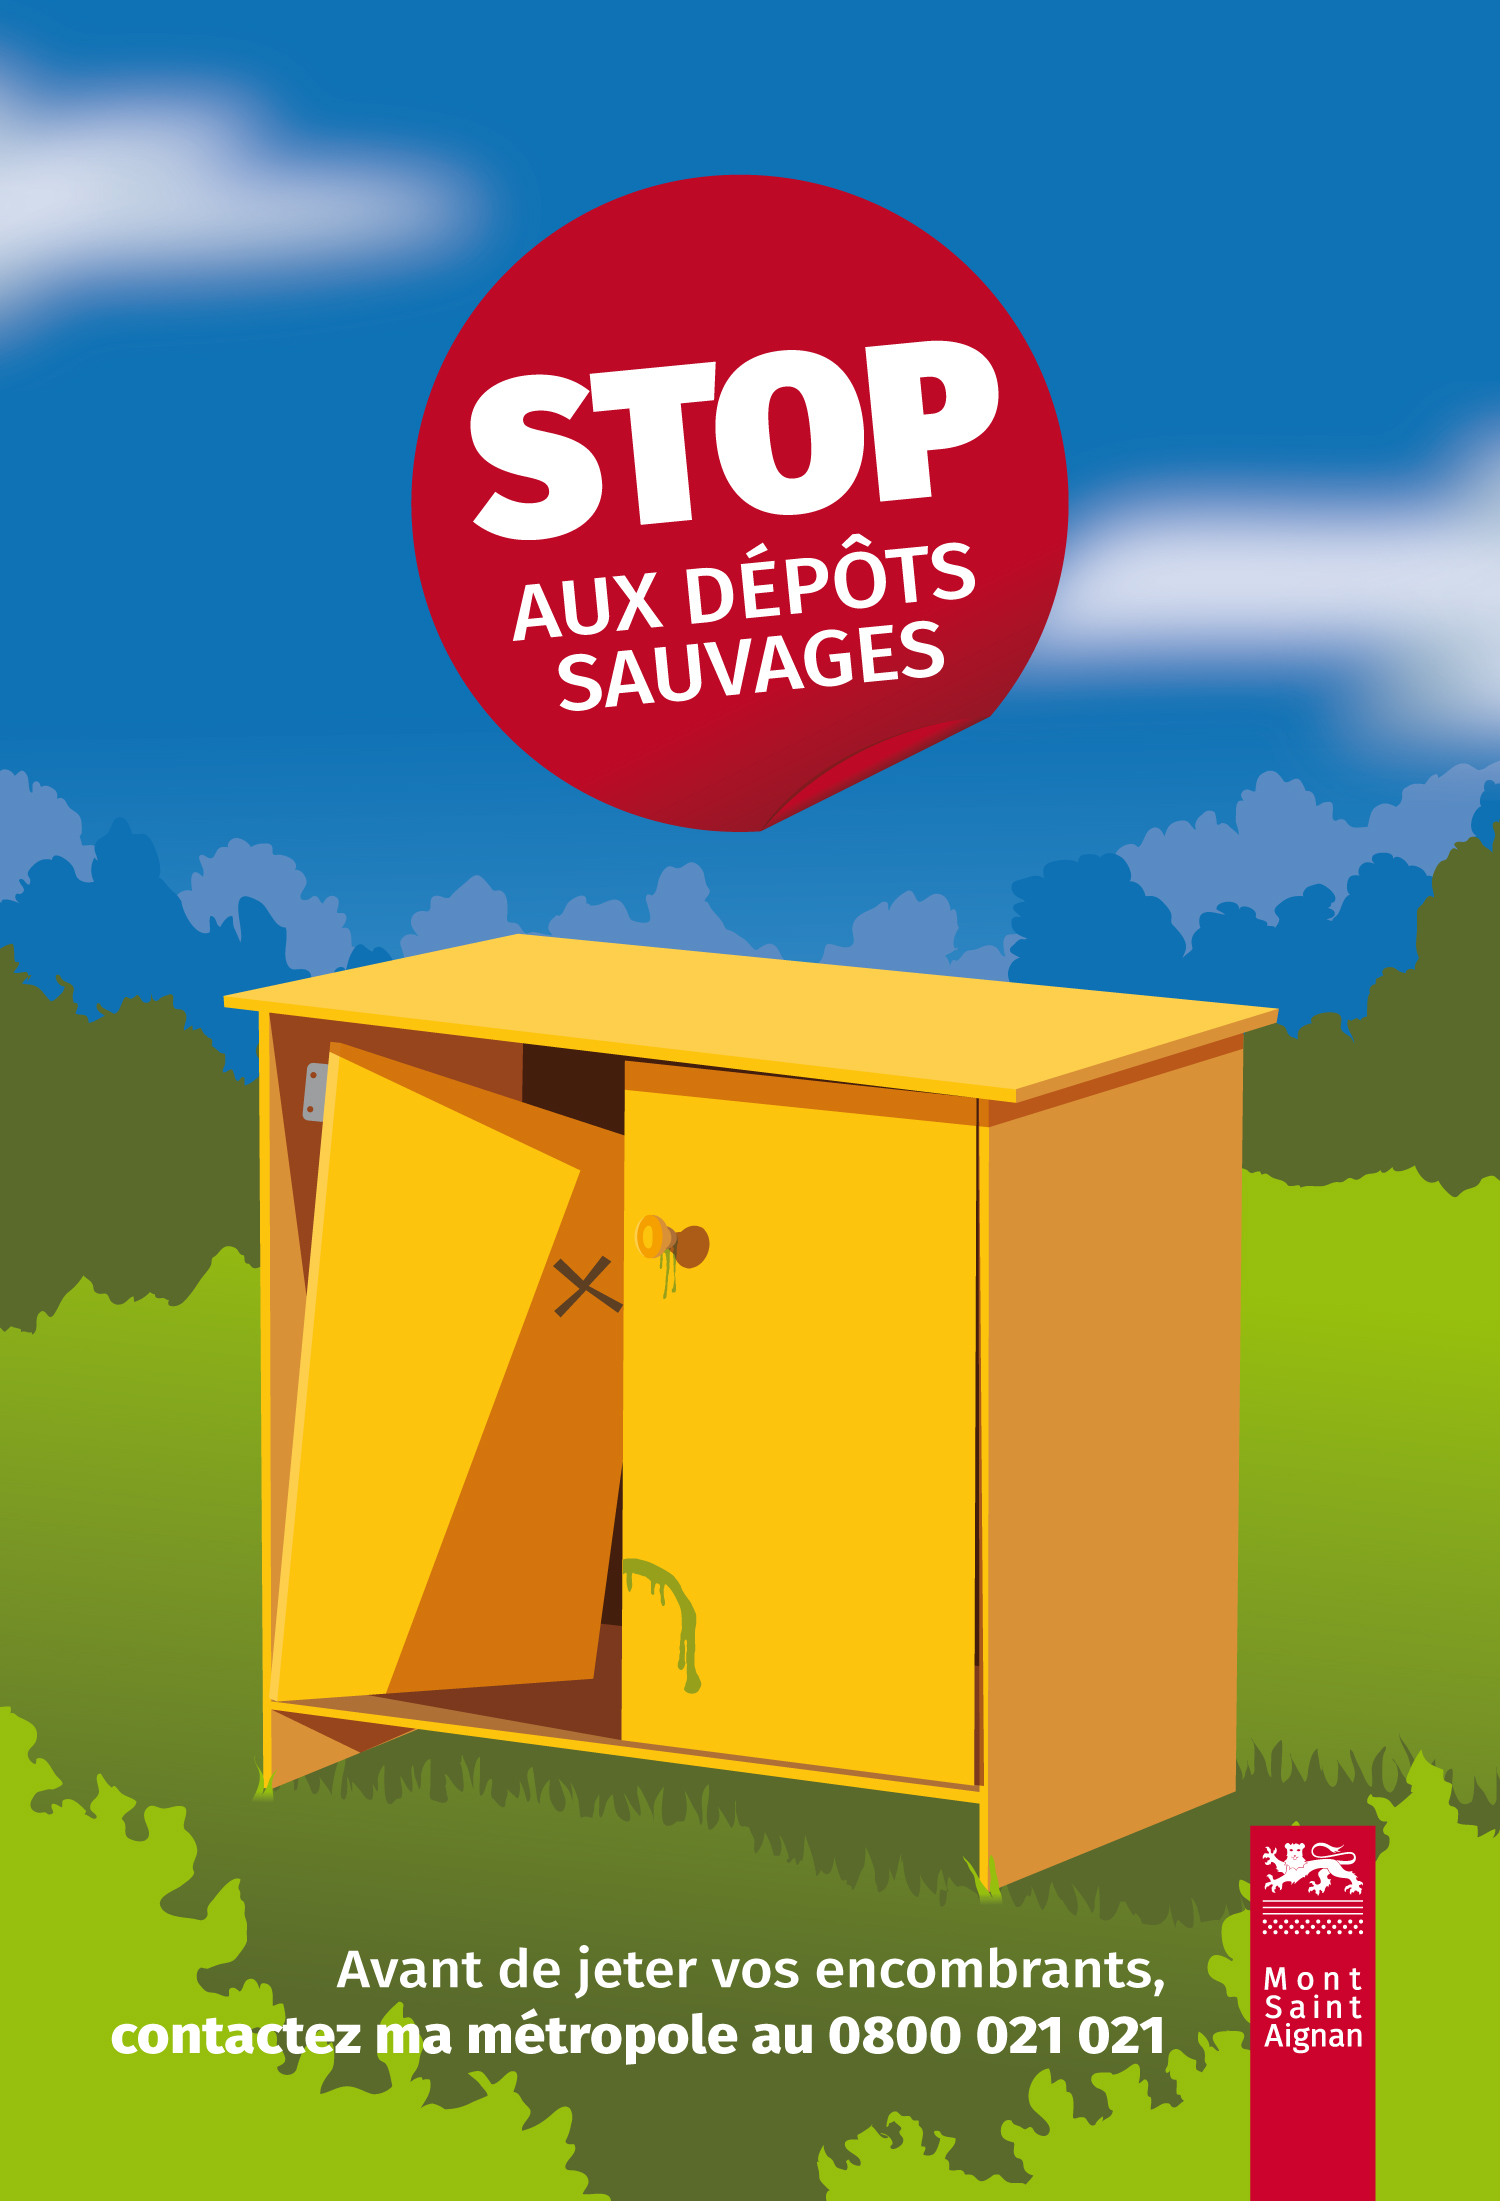 Mont-Saint-Aignan campagne anti dépôts sauvages